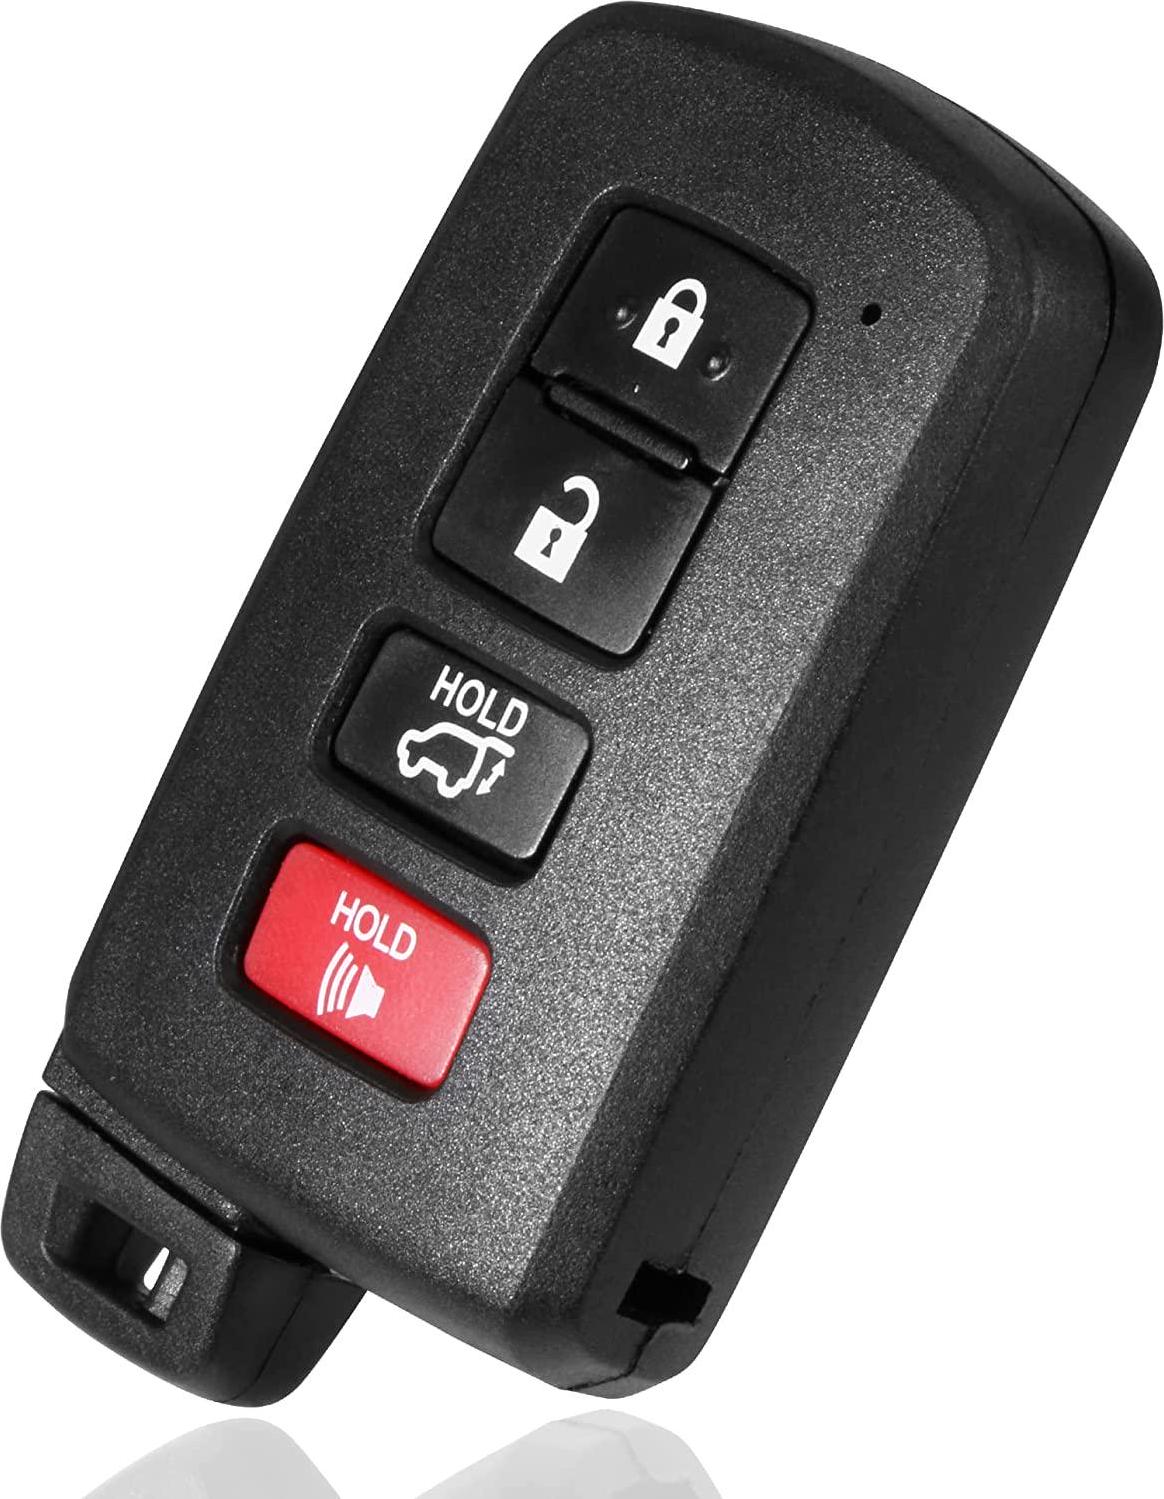 KRSCT, KRSCT Key Remote Fits Toyota 2009-2010 Corolla, 2009-2013 Matrix, 2009-2010 Vibe, 2009-2013 Venza 4-Button Car key Replaces GQ4-29T